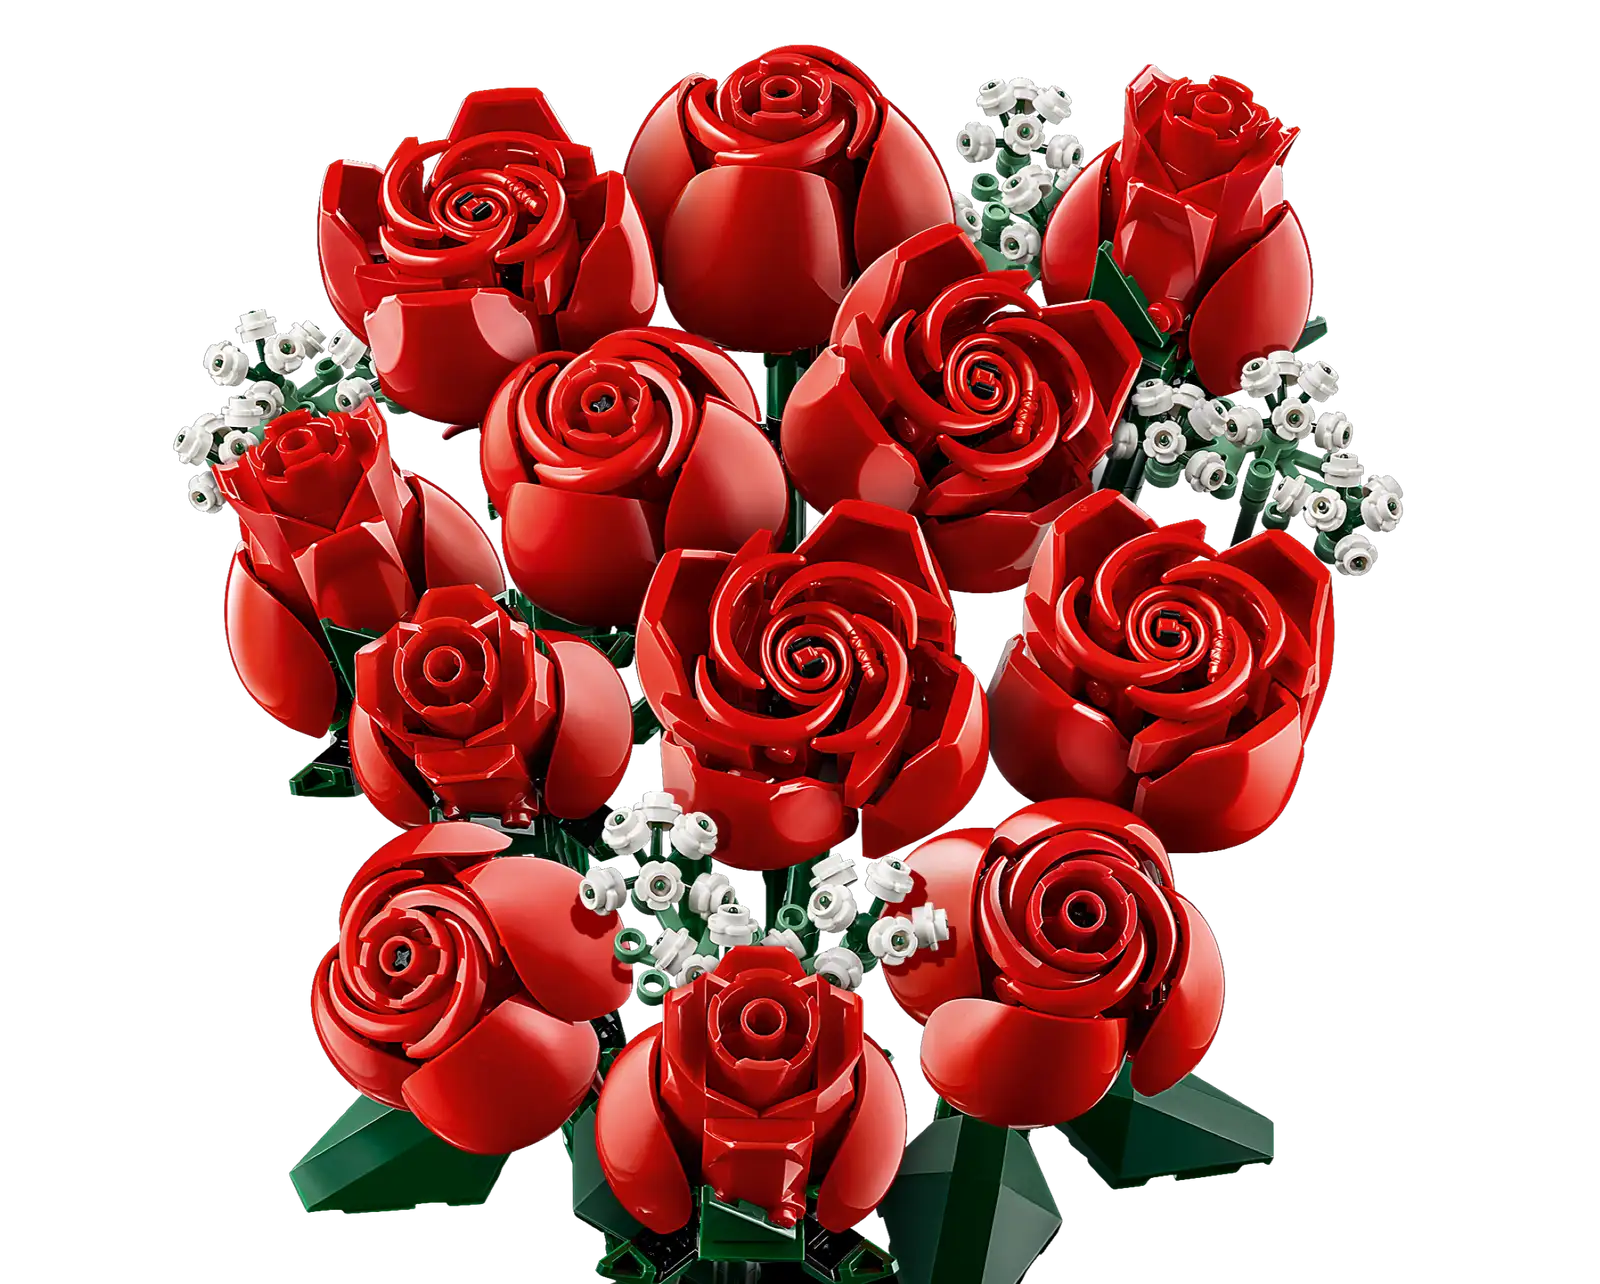 Lego Le bouquet de roses